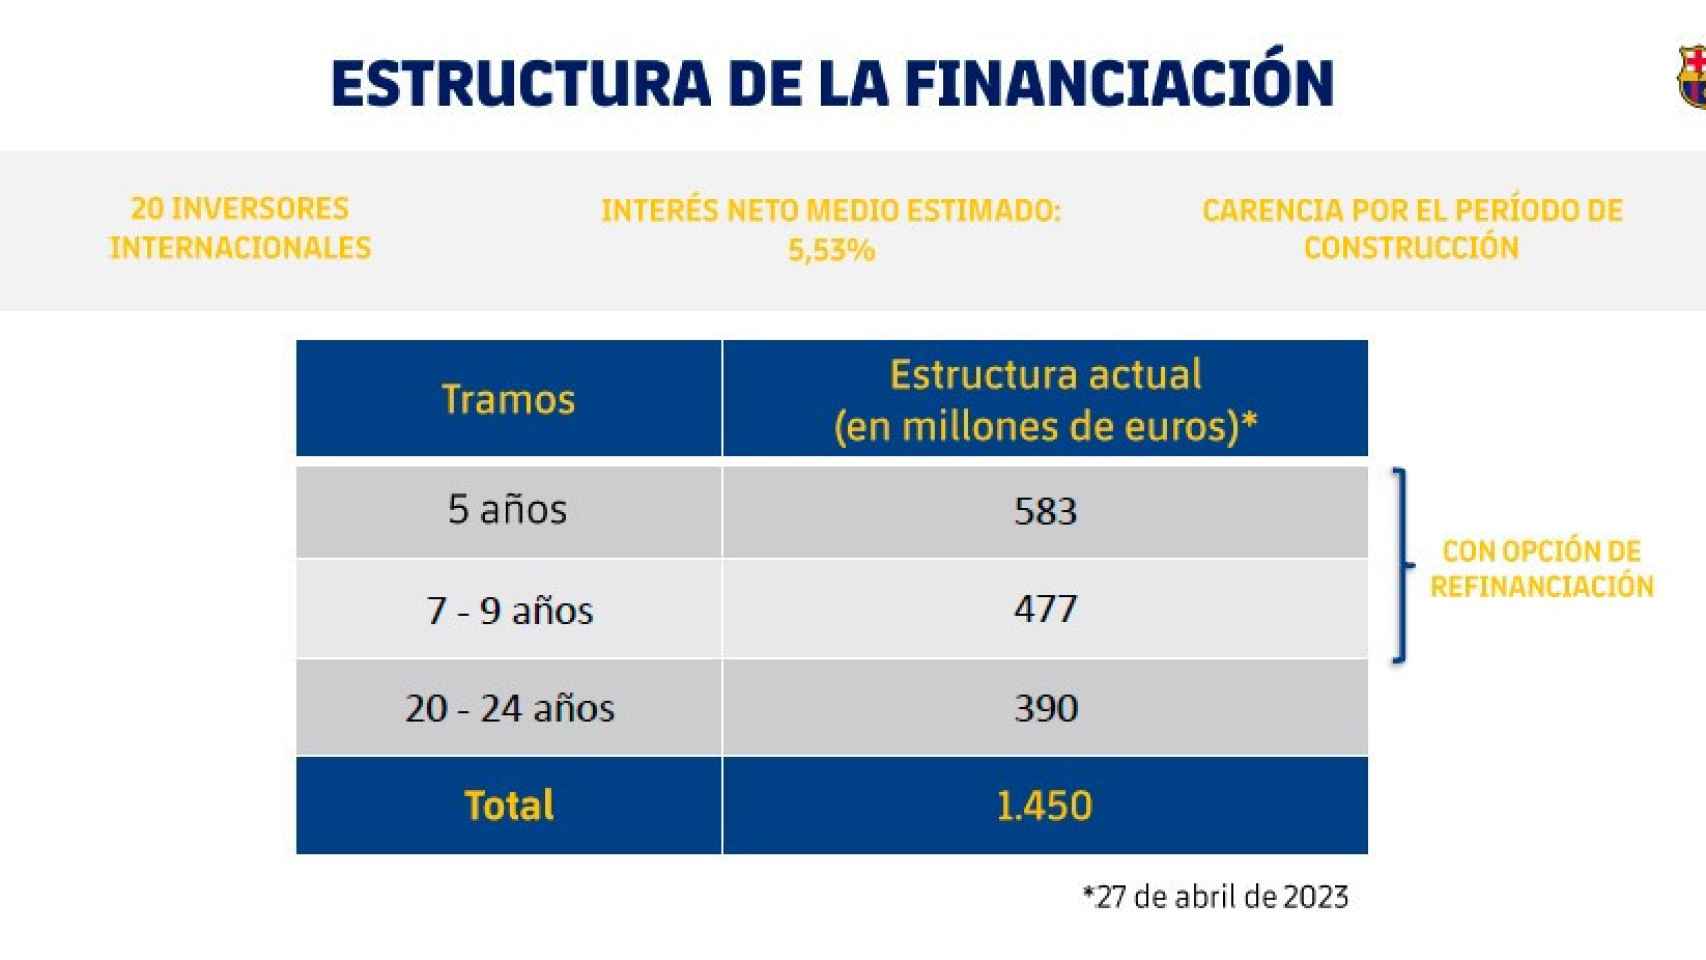 La estructura de la financiación del Espai Barça, detallada